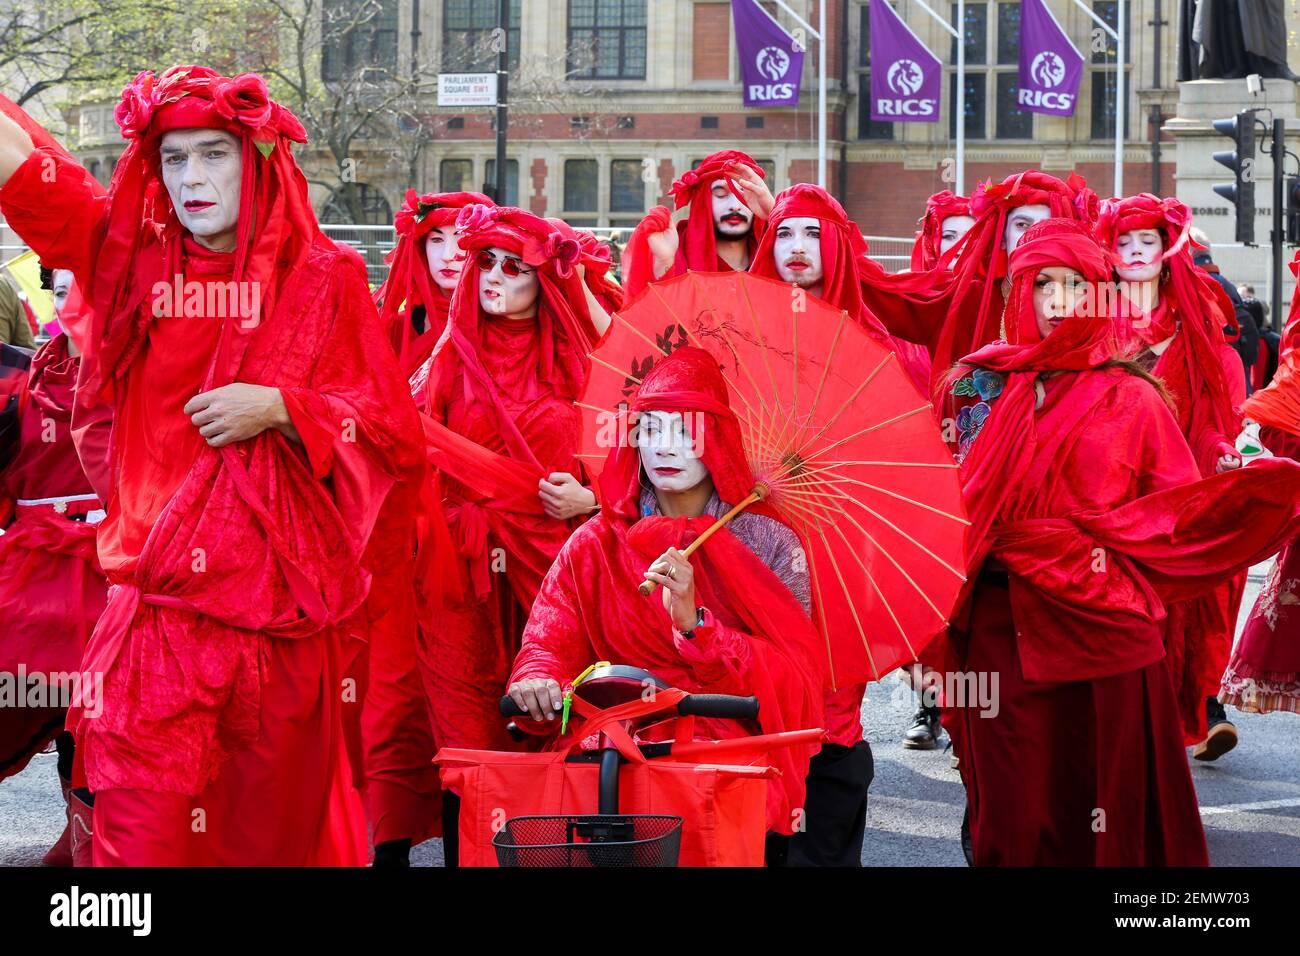 Durante la manifestación se ve a los activistas ambientales vestidas con  disfraces de lujo. Protesta activista en la Plaza del Parlamento exigiendo  la acción urgente del Gobierno sobre el cambio climático, la